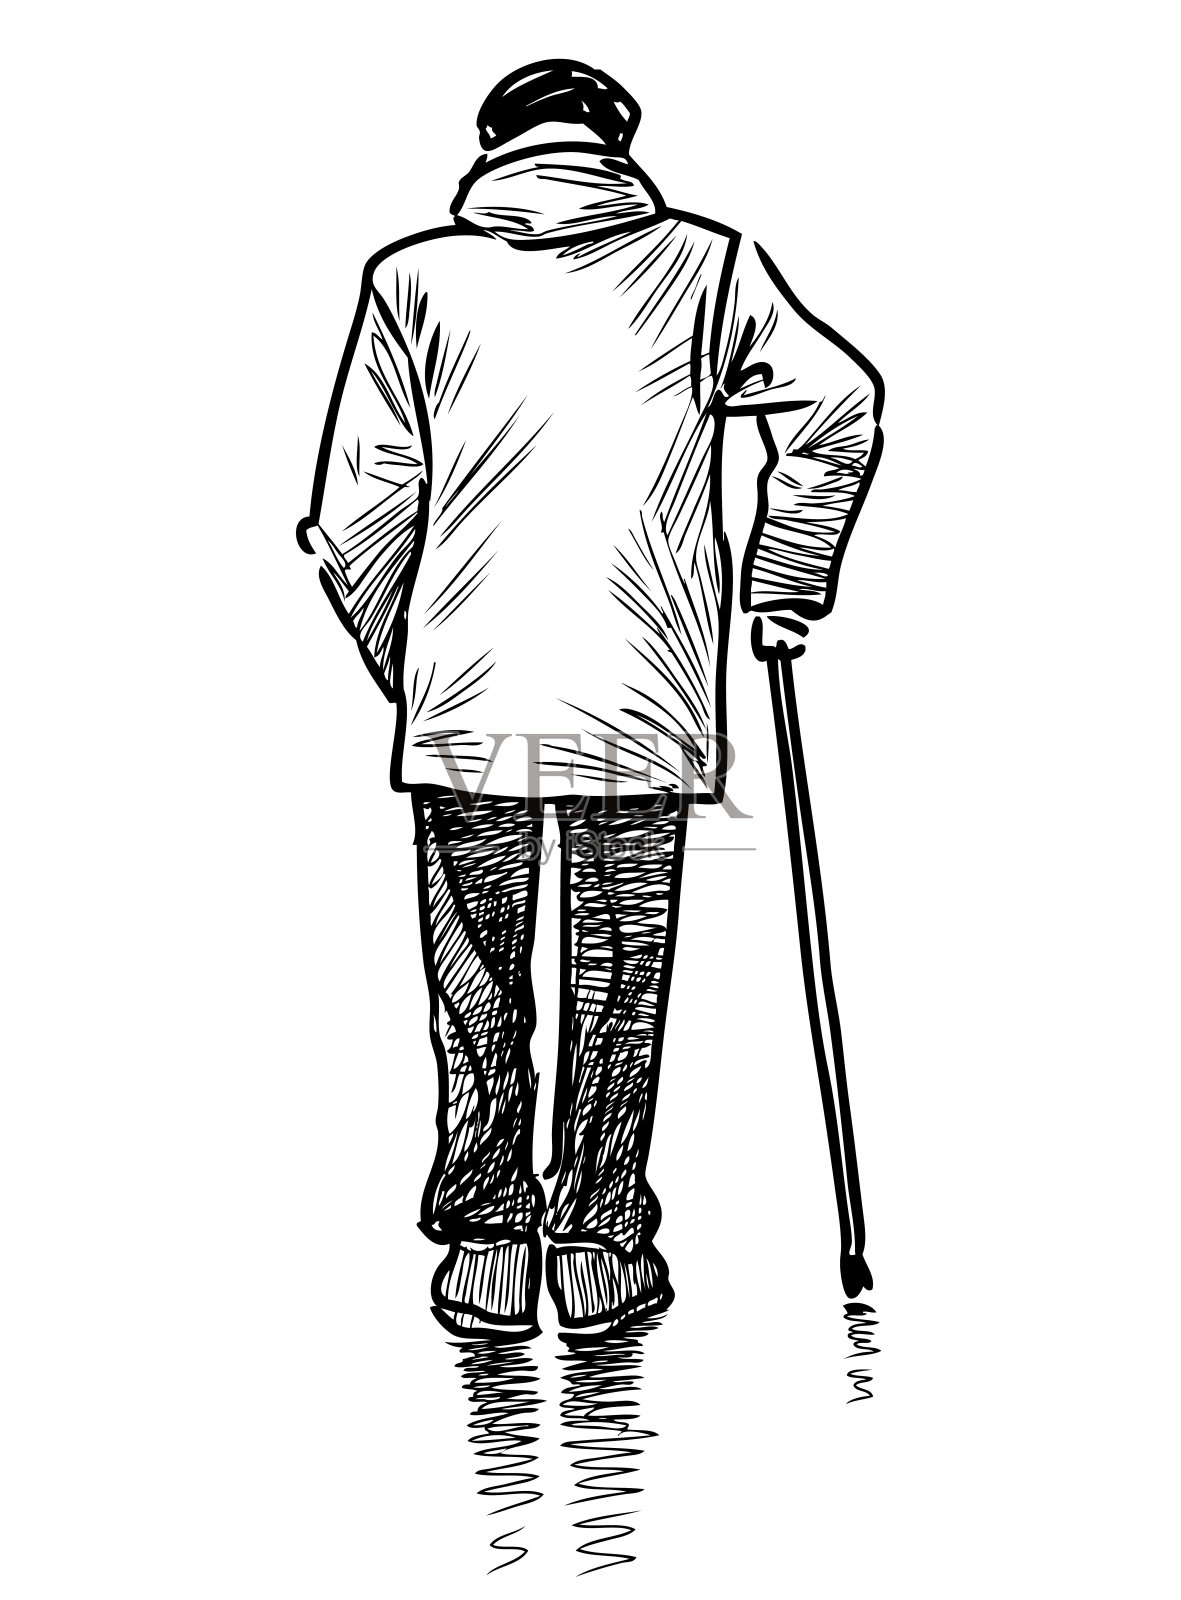 一个老人拄着拐杖走在街上的素描设计元素图片